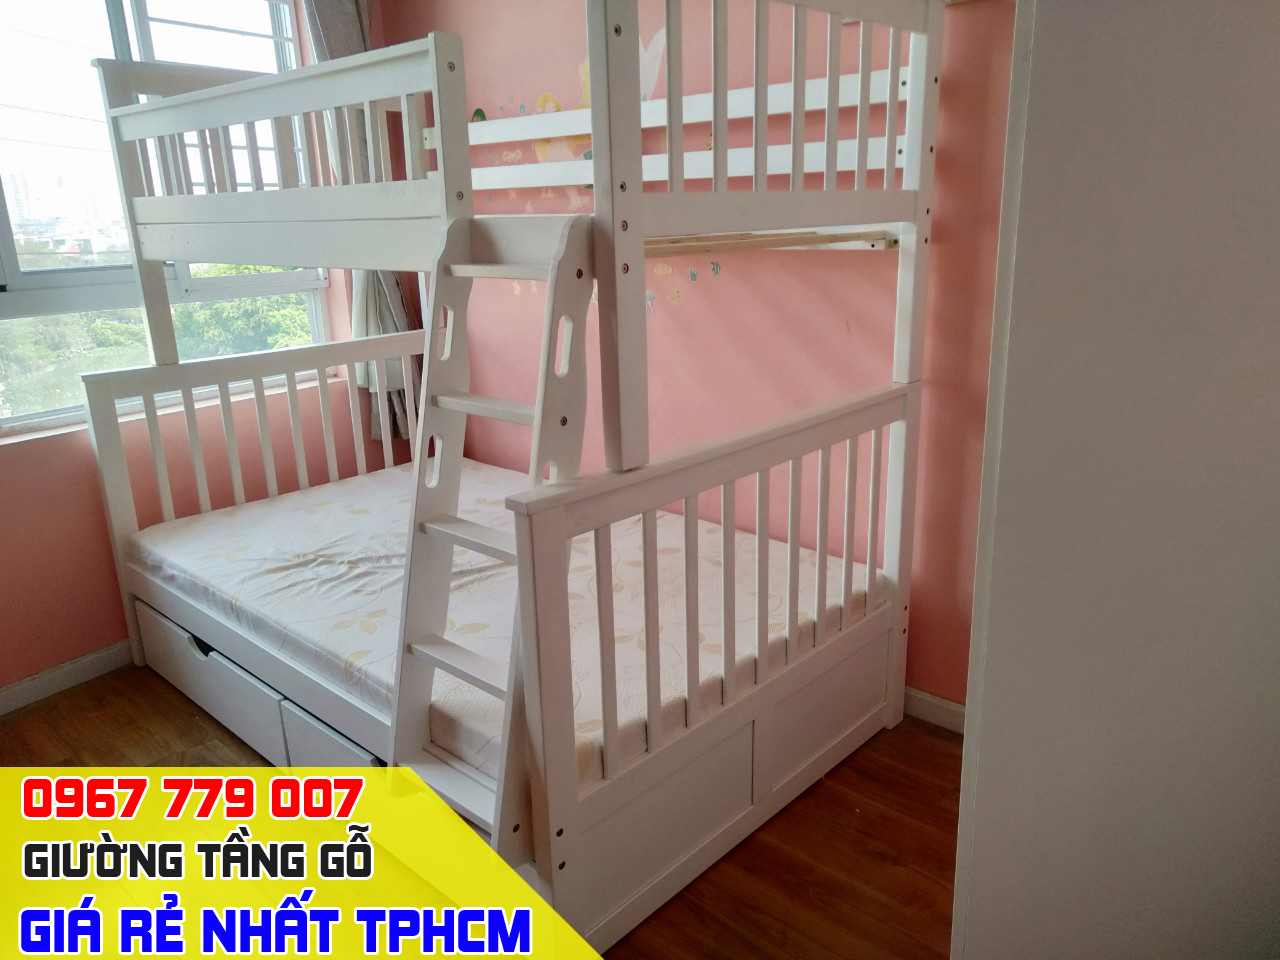 CH bán giường tầng trẻ em giá rẻ uy tín nhất Quận Gò Vấp TPHCM 10